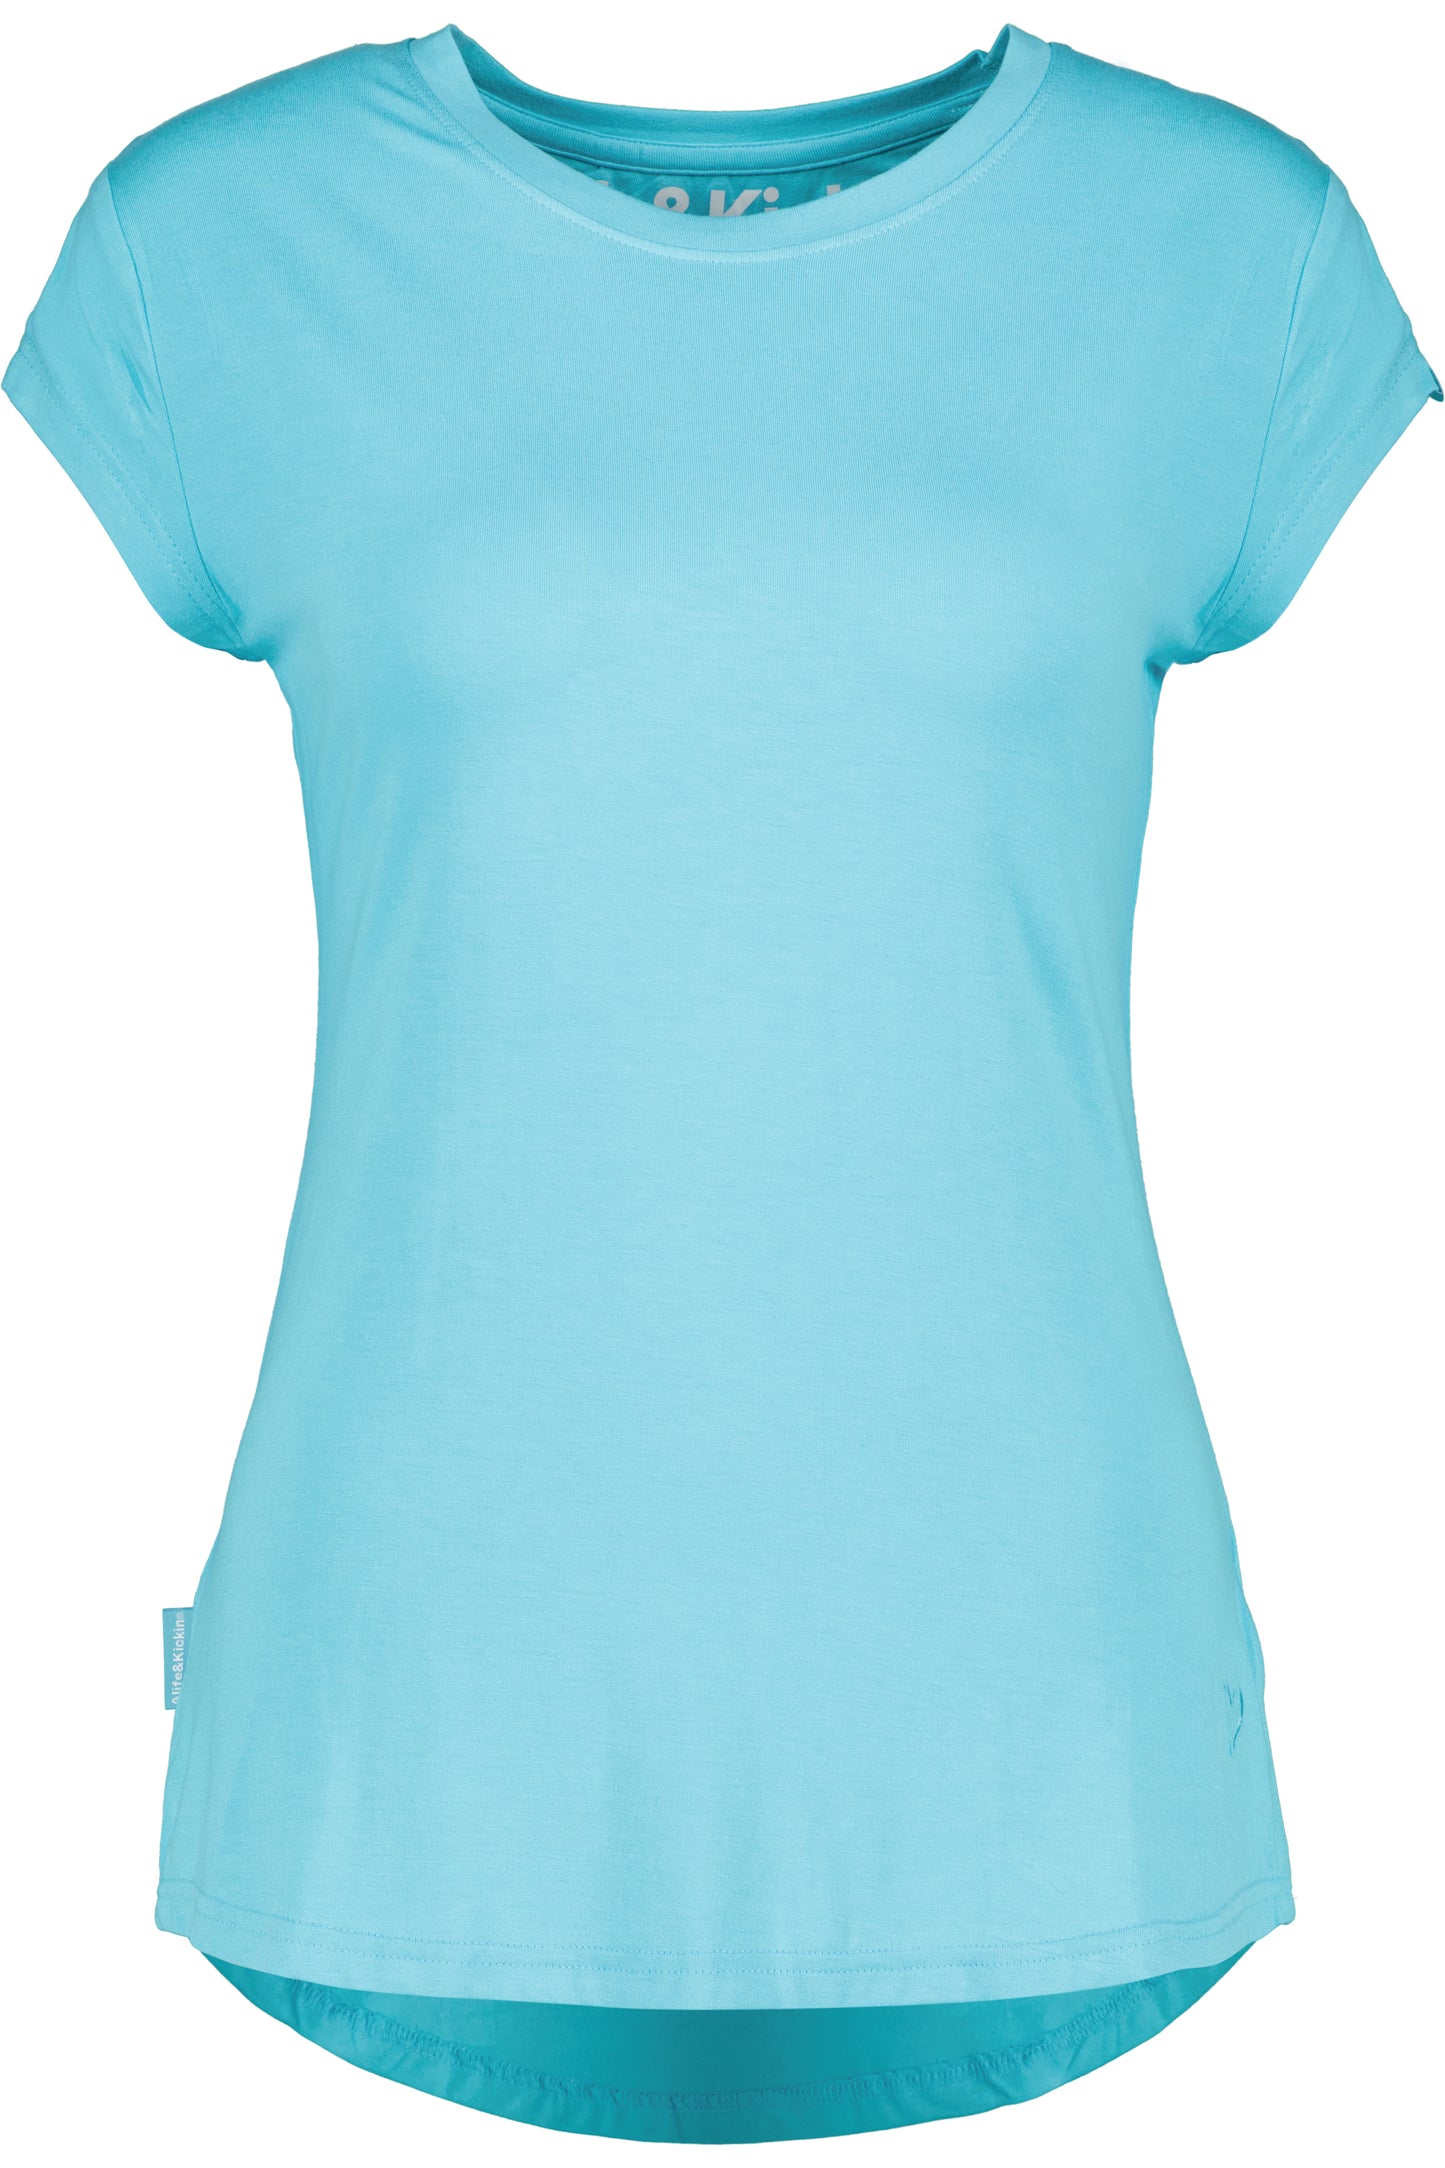 Vielseitiges Basic-Shirt für stylische Outfits: MimmyAK A von Alife and Kickin Blau